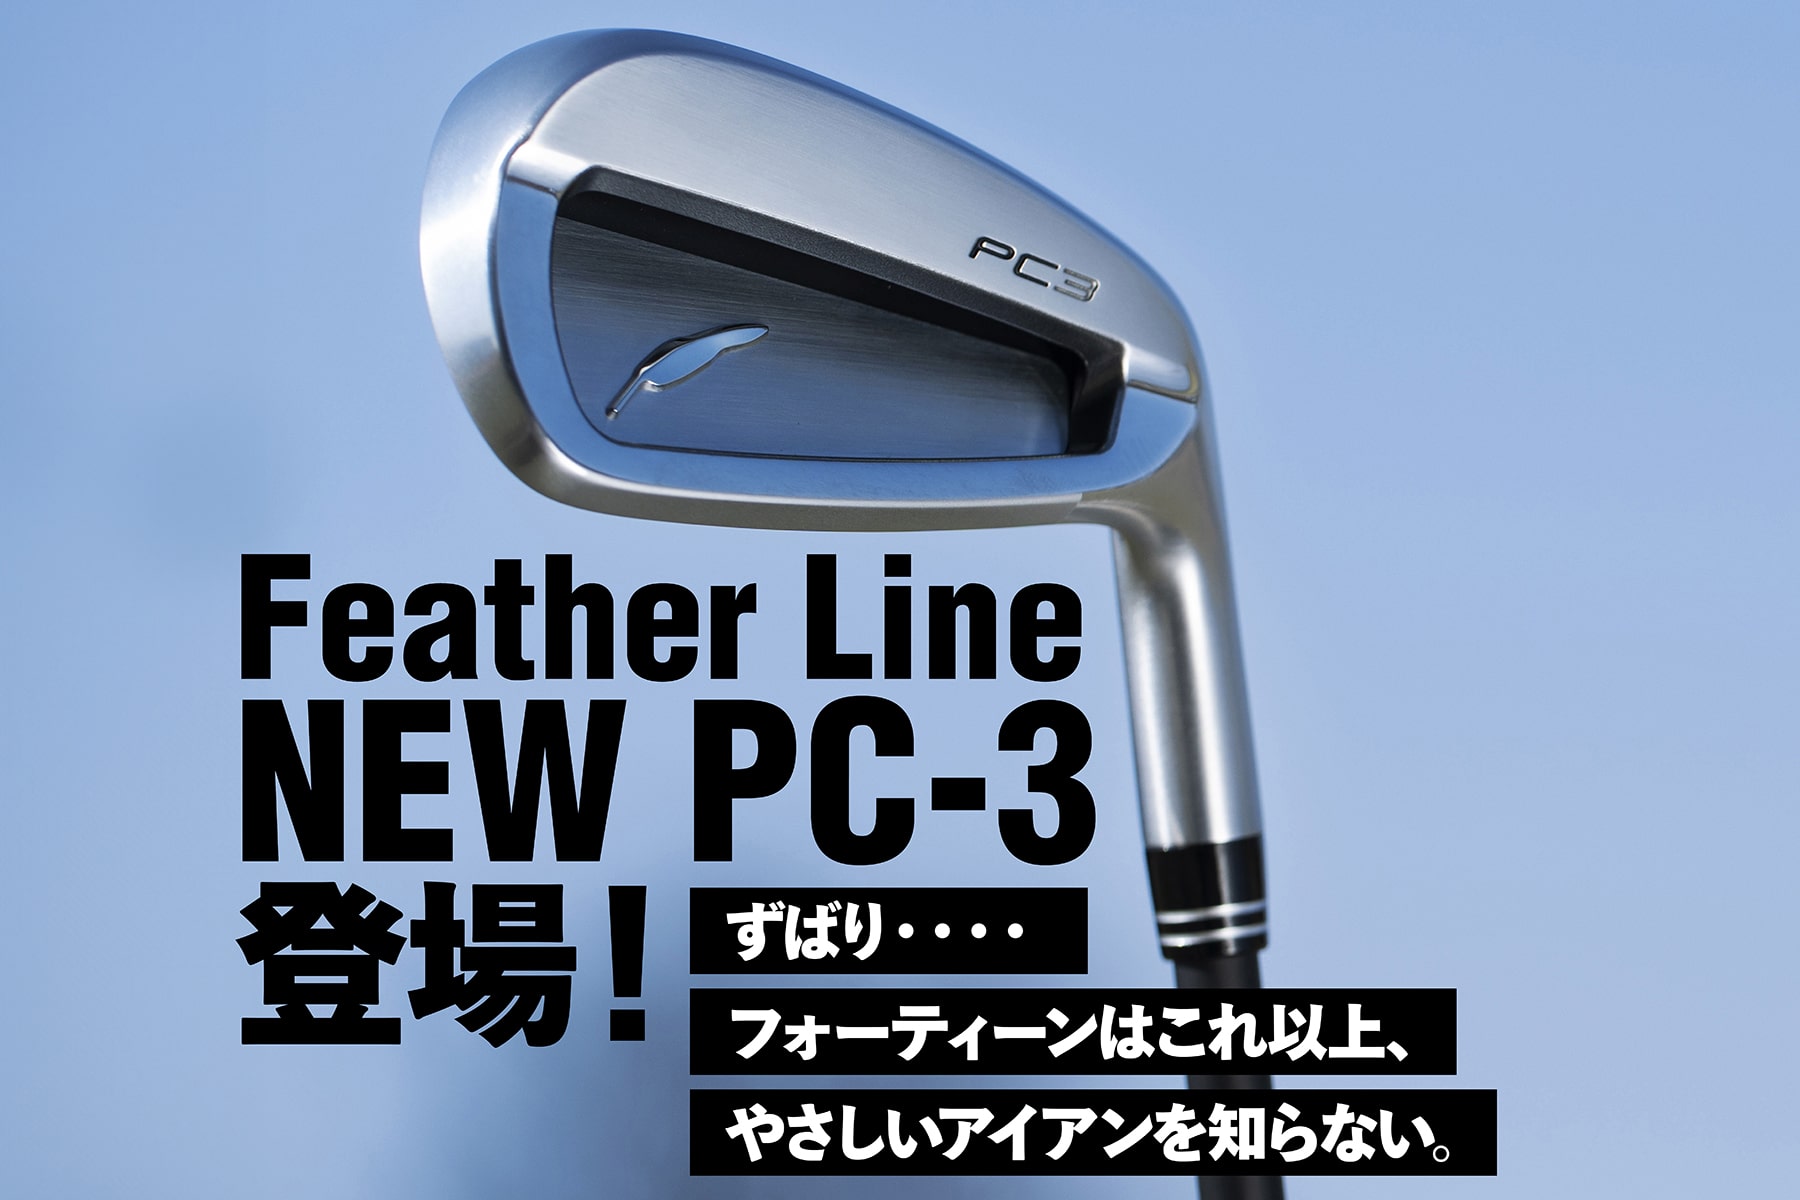 Feather Line
NEW PC-3登場！

ずばり・・・・
フォーティーンはこれ以上、
やさしいアイアンを知らない。